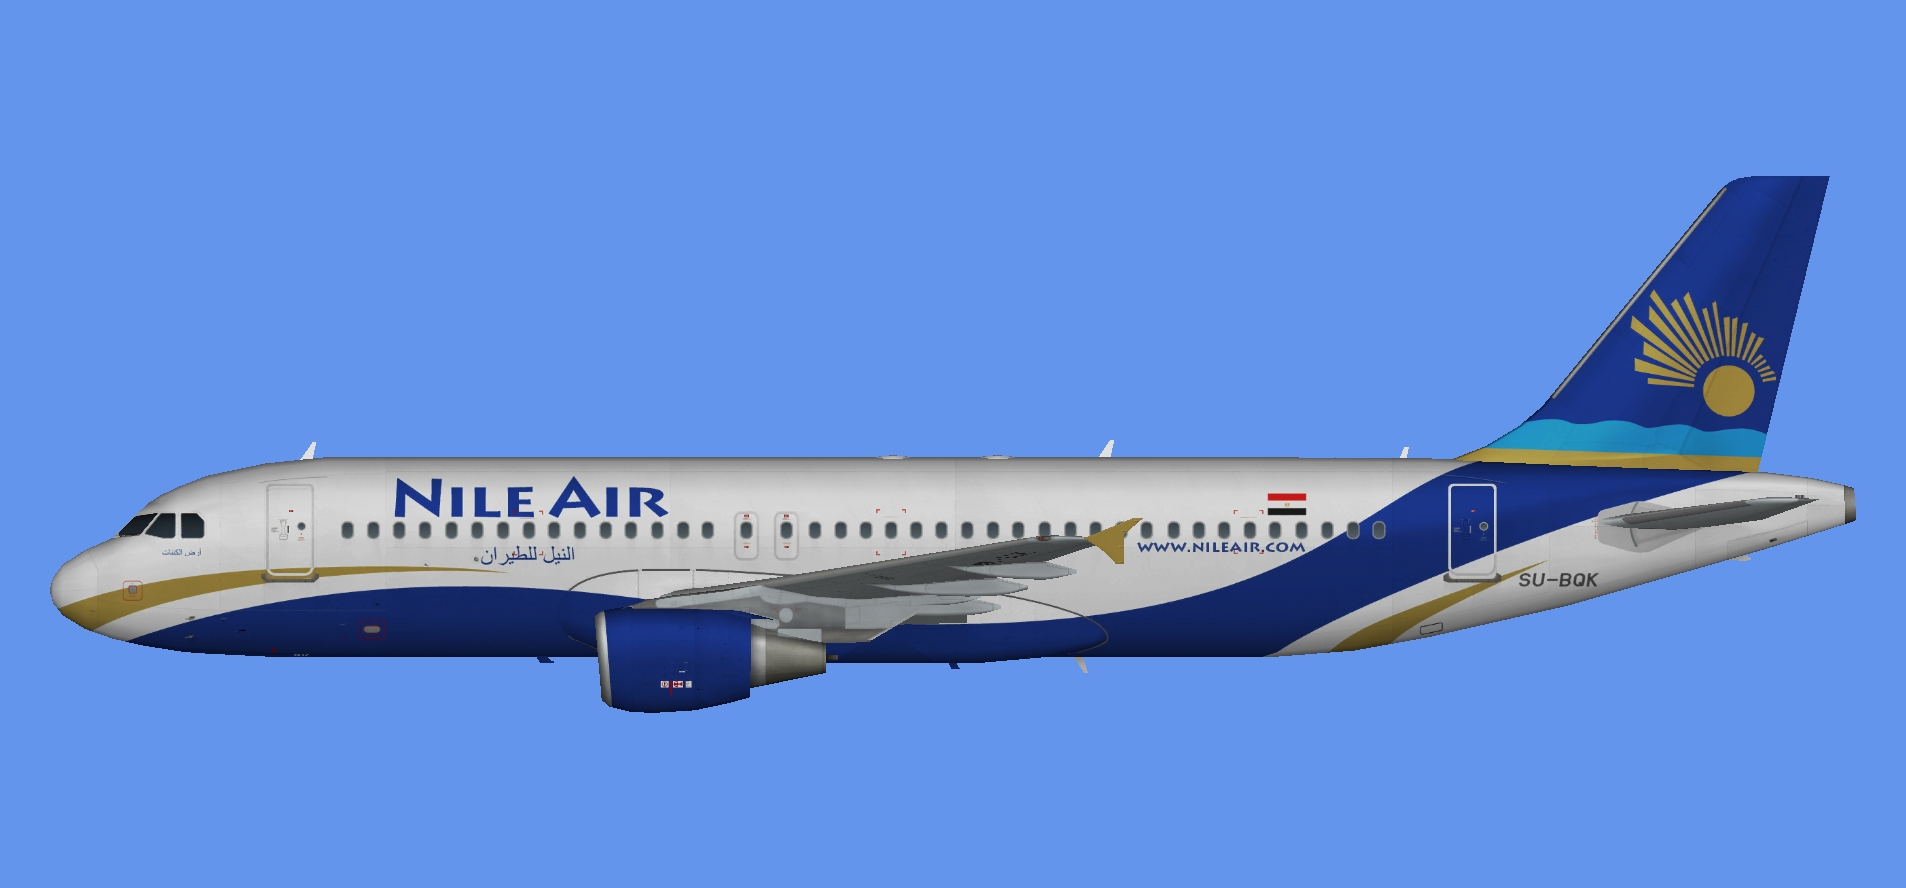 Nile Air Airbus A320 CFM